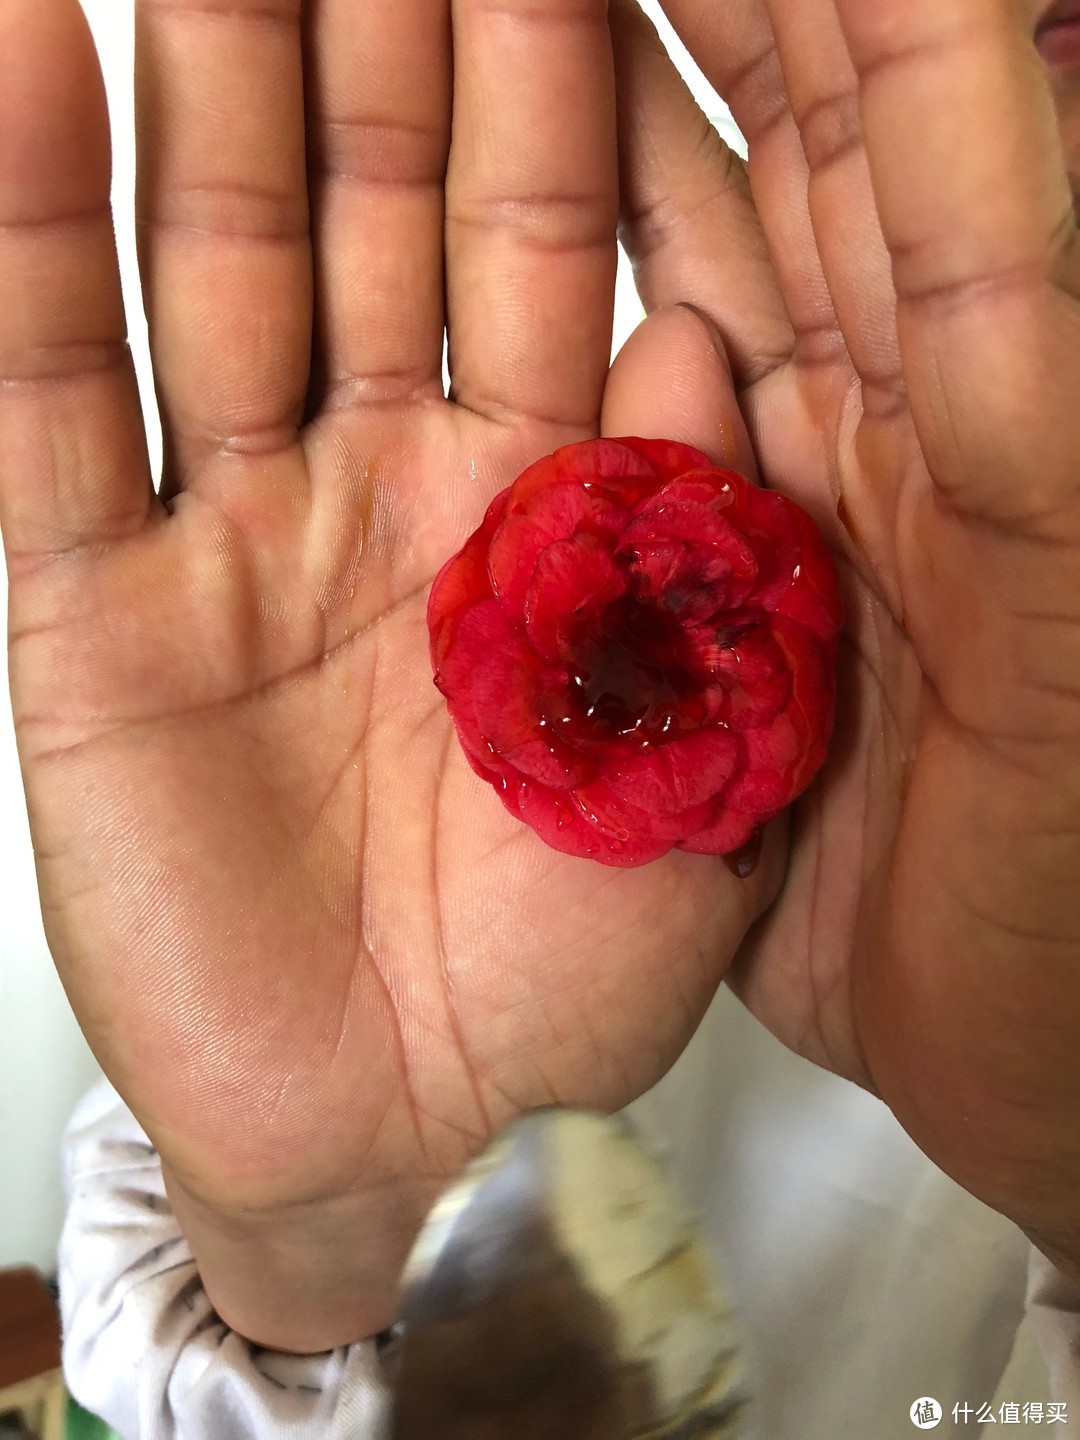 将涂抹了蚝油的红花朵夹在两个手掌中央，模拟如厕后的肛门。